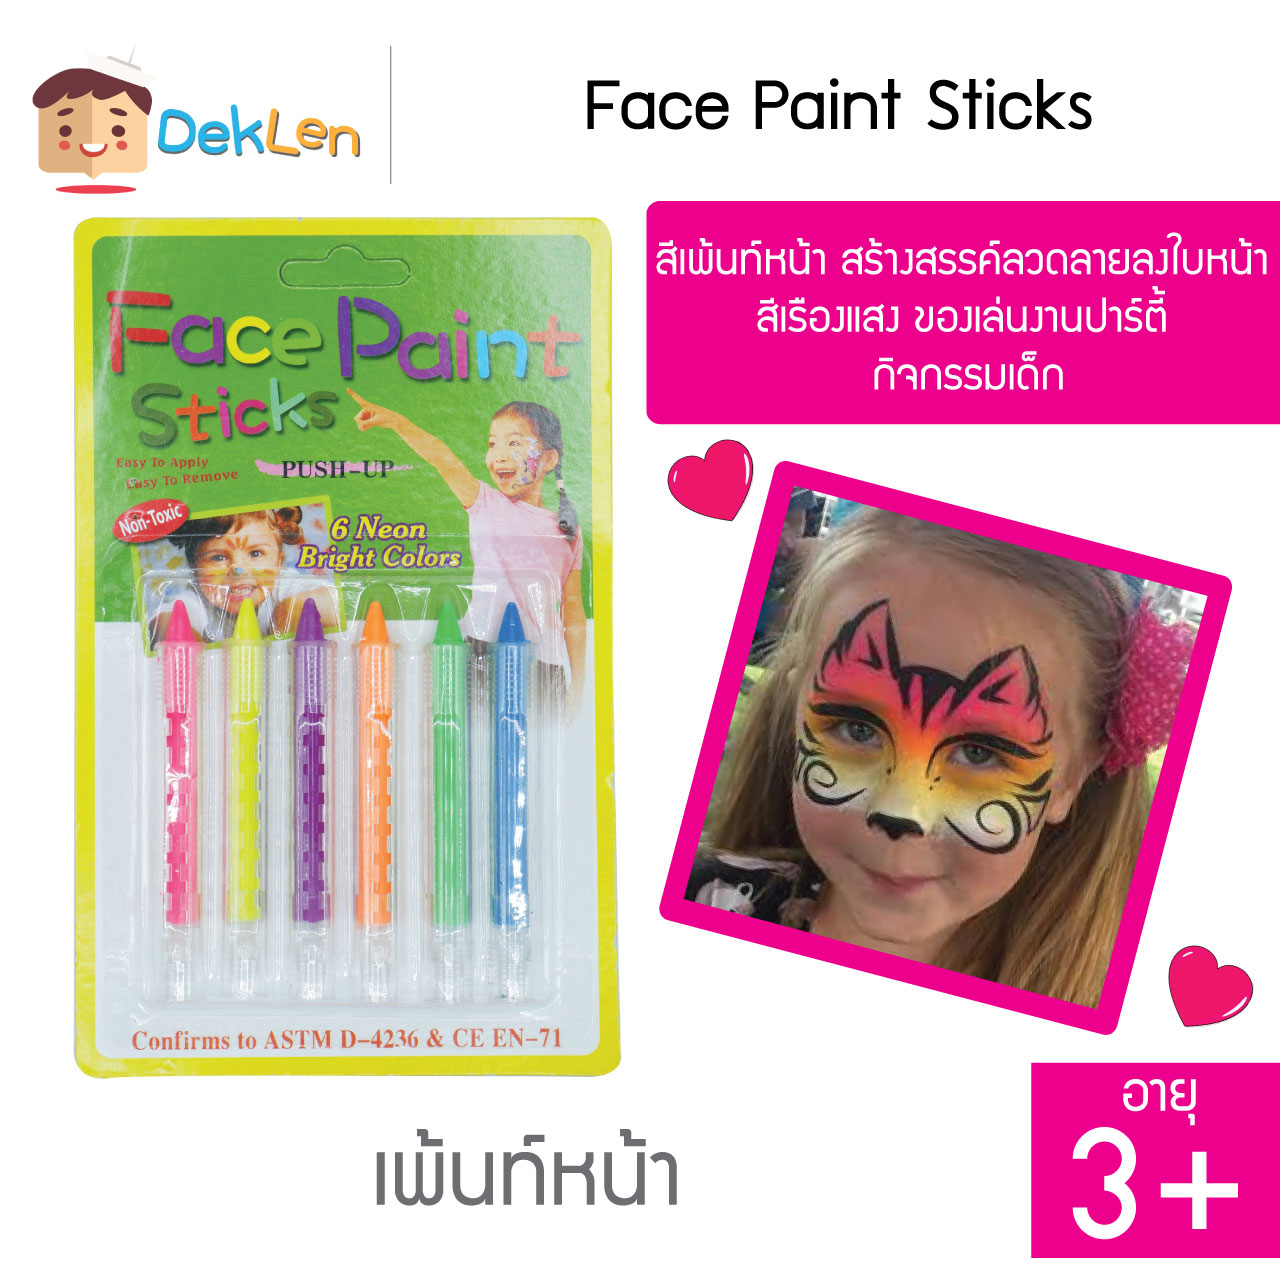 สีเพ้นท์หน้า Face Paint Sticks สร้างสรรค์ลวดลายลงใบหน้า สีเรืองแสง ของเล่นงานปาร์ตี้ กิจกรรมเด็ก